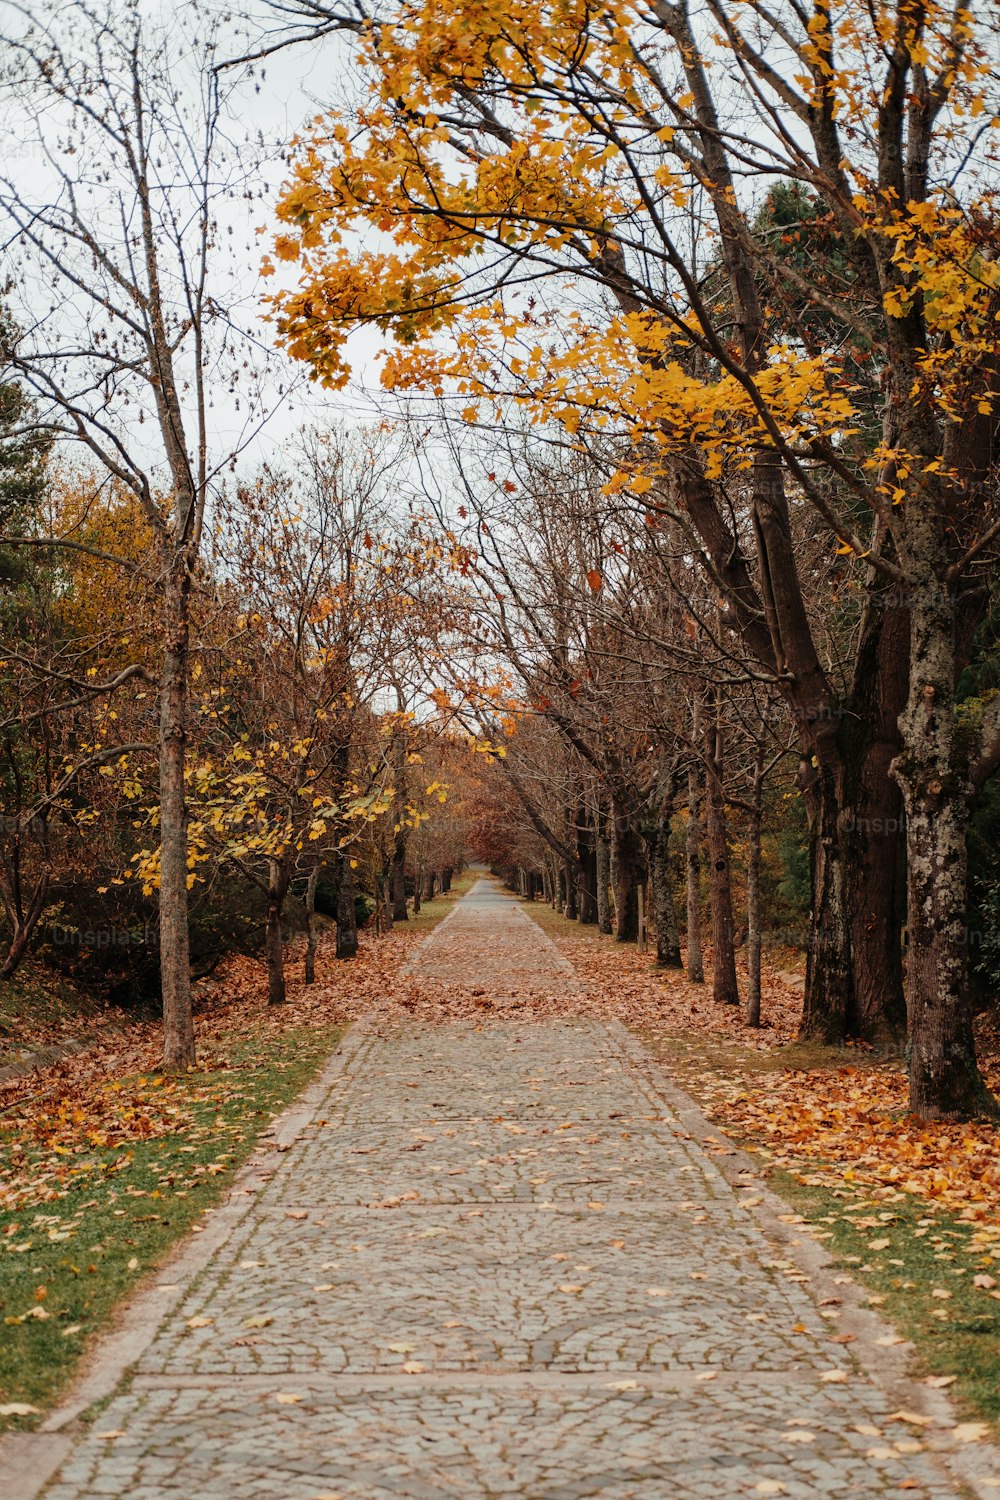 Una strada di mattoni circondata da alberi coperti di foglie